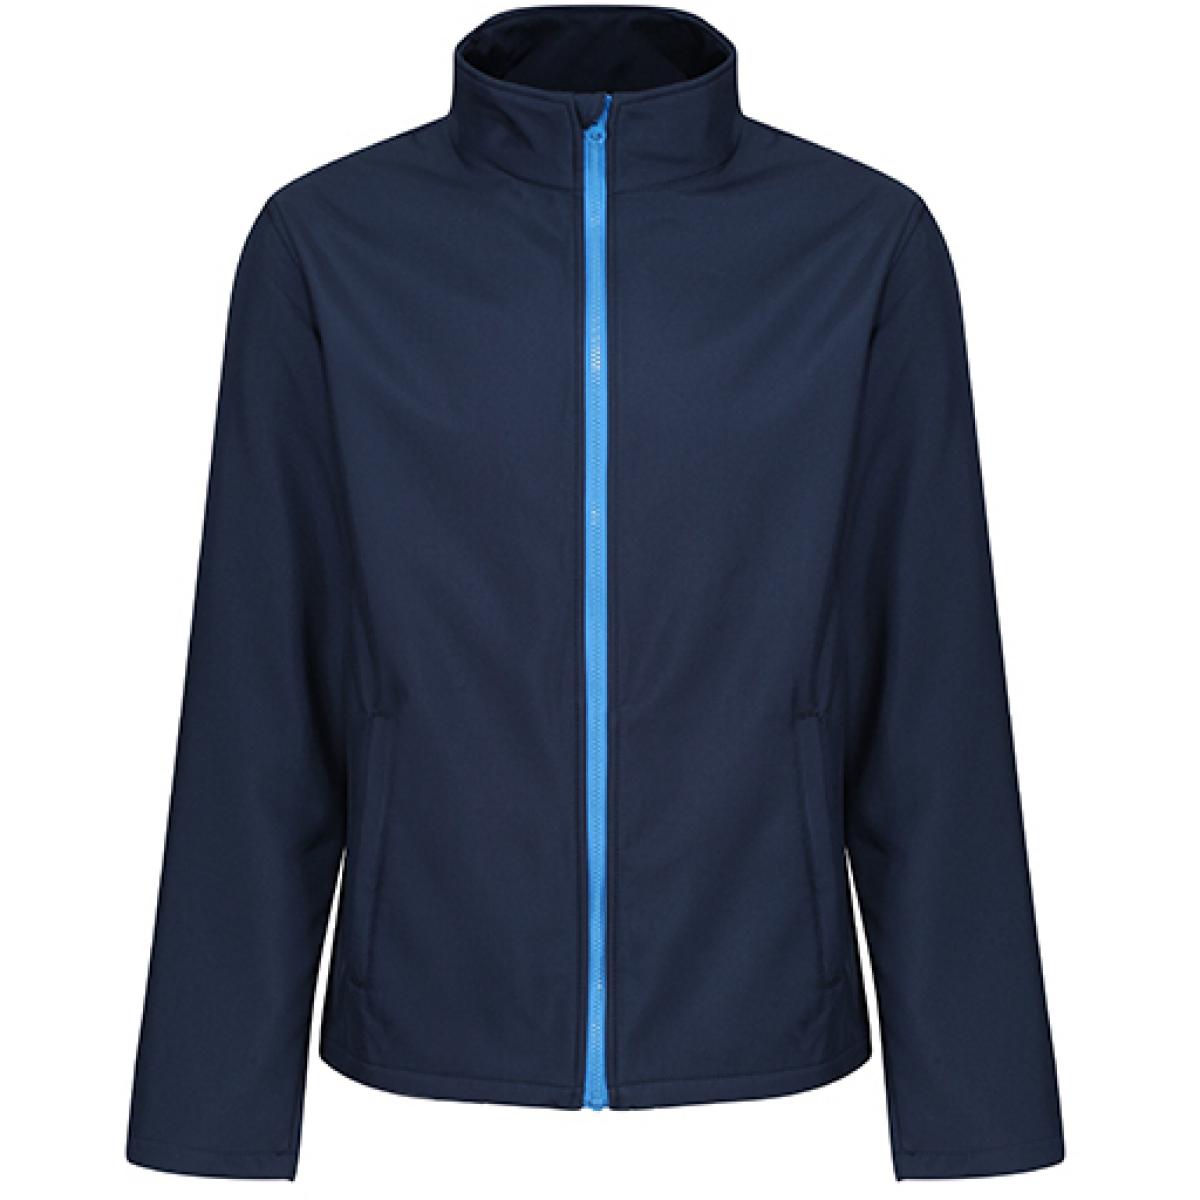 Hersteller: Regatta Professional Herstellernummer: TRA728 Artikelbezeichnung: Eco Ablaze Softshell Jacke Farbe: Navy/French Blue